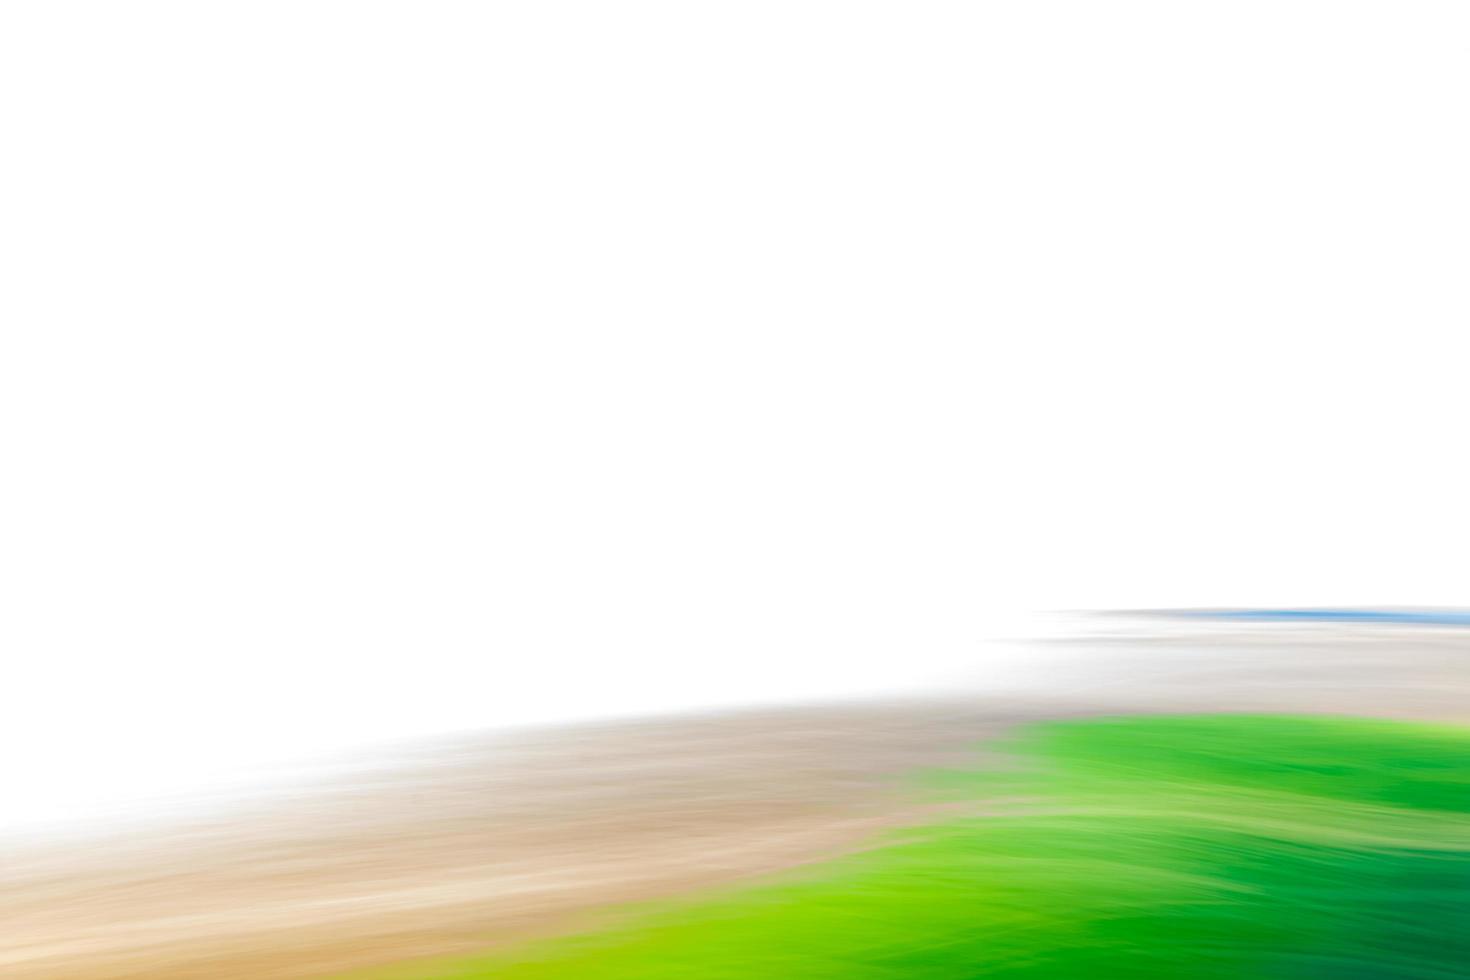 fundo verde marrom bege branco abstrato. imitação da transição de um deserto para um oásis. foto